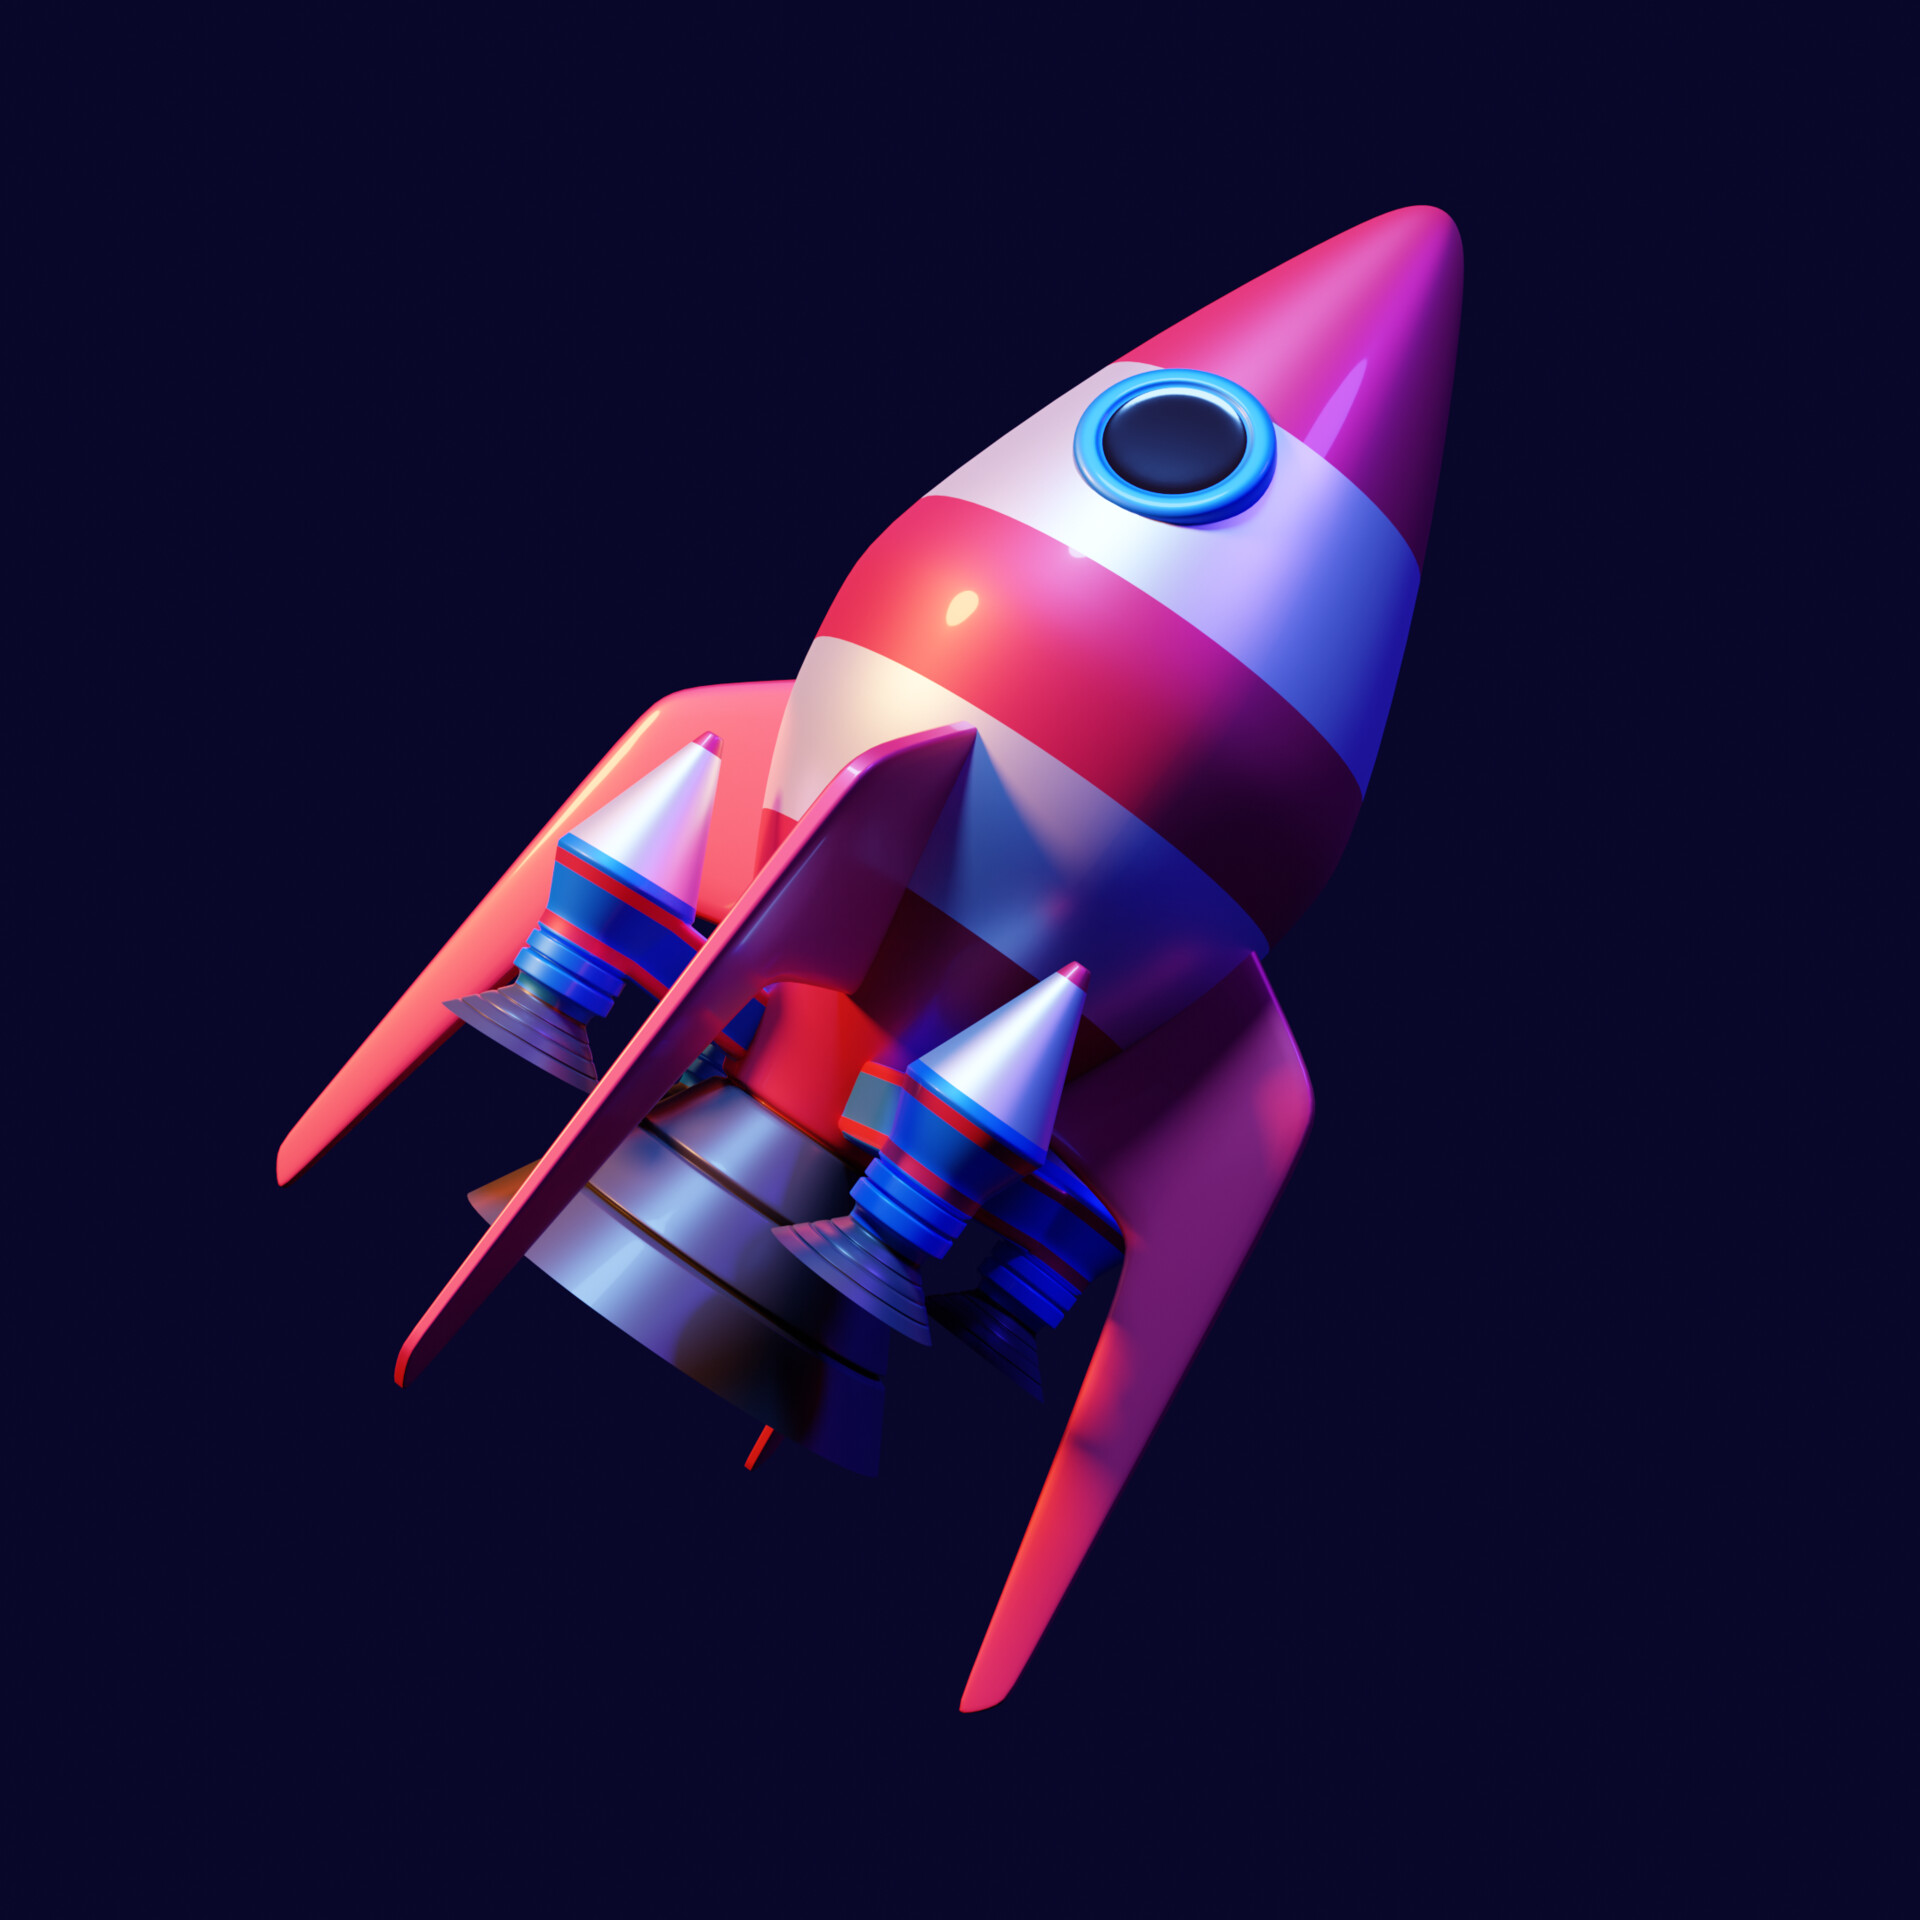 ArtStation - Cartoon Rocket